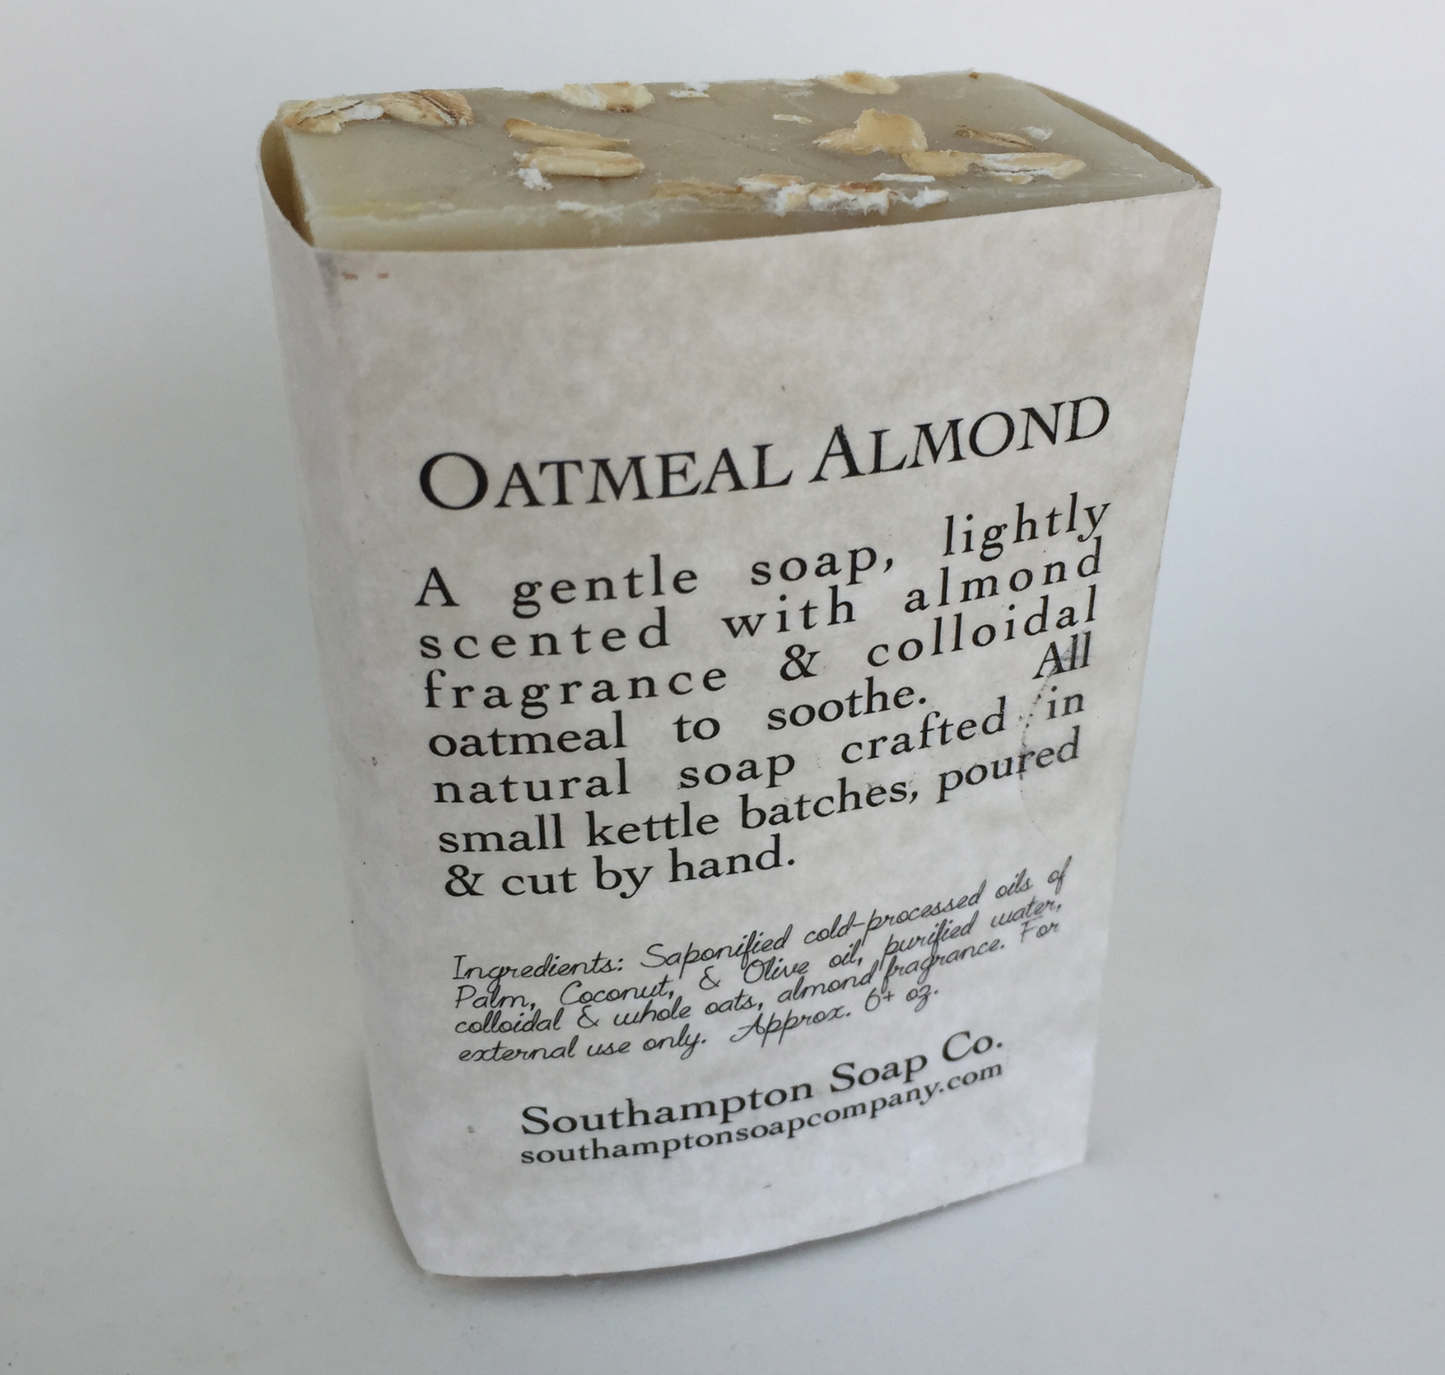 Southampton Soap - Oatmeal Almond